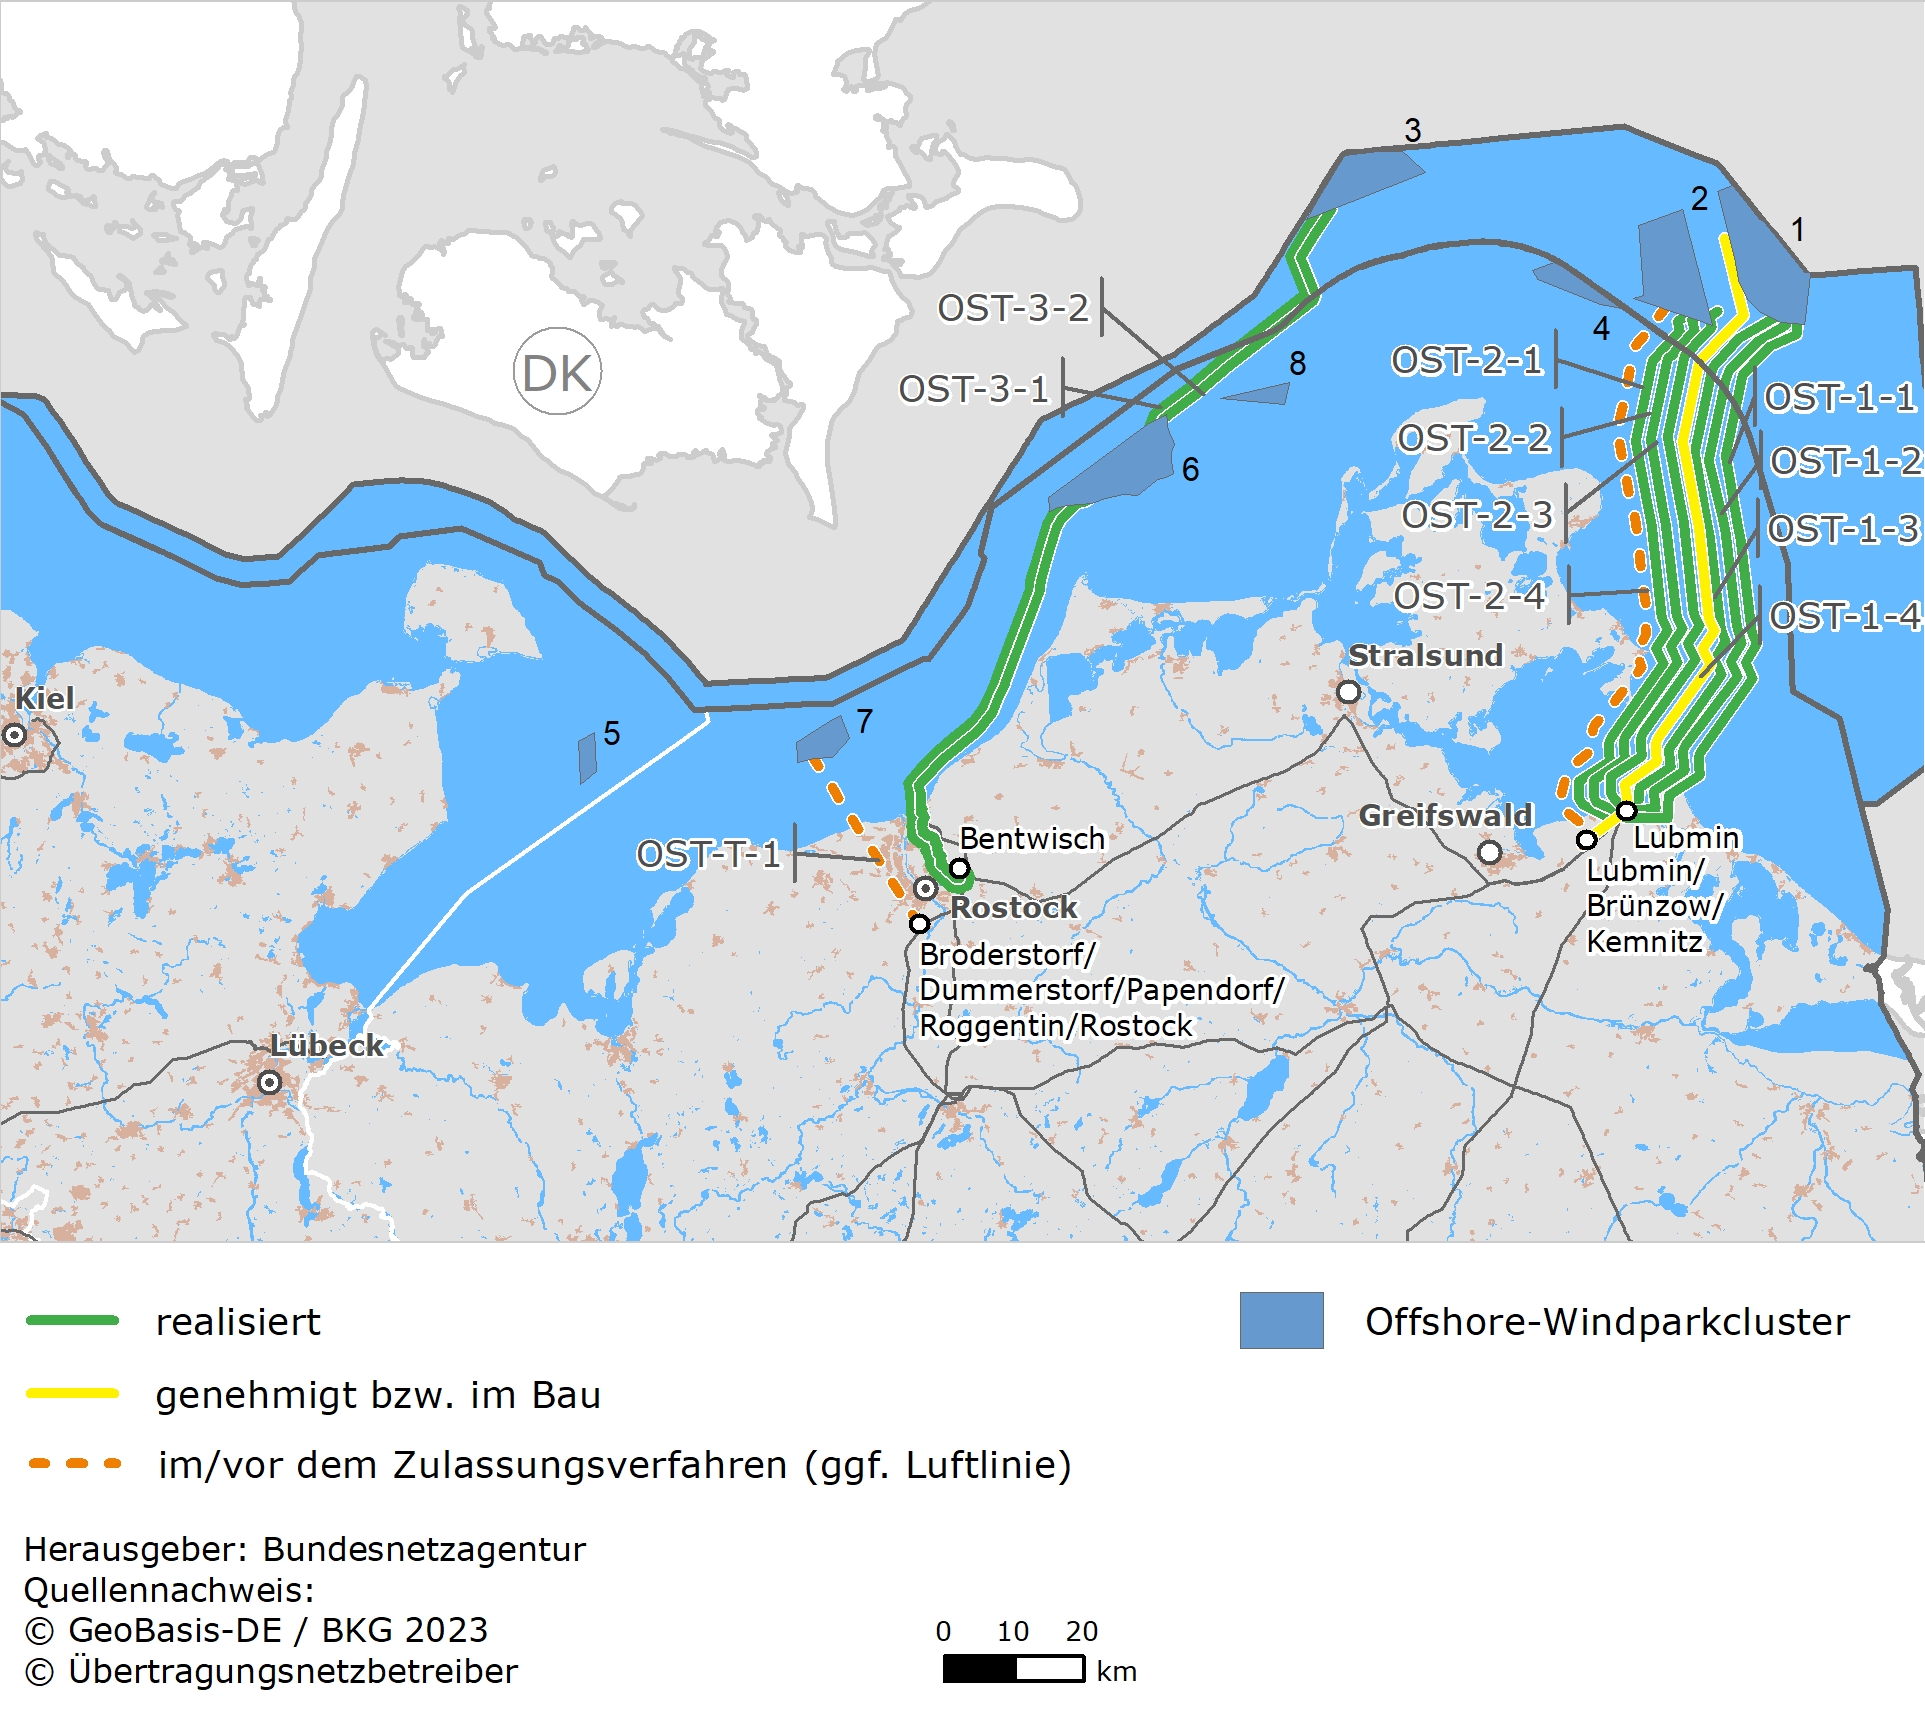 schematische Darstellung der Offshore-Vorhaben in der Ostsee